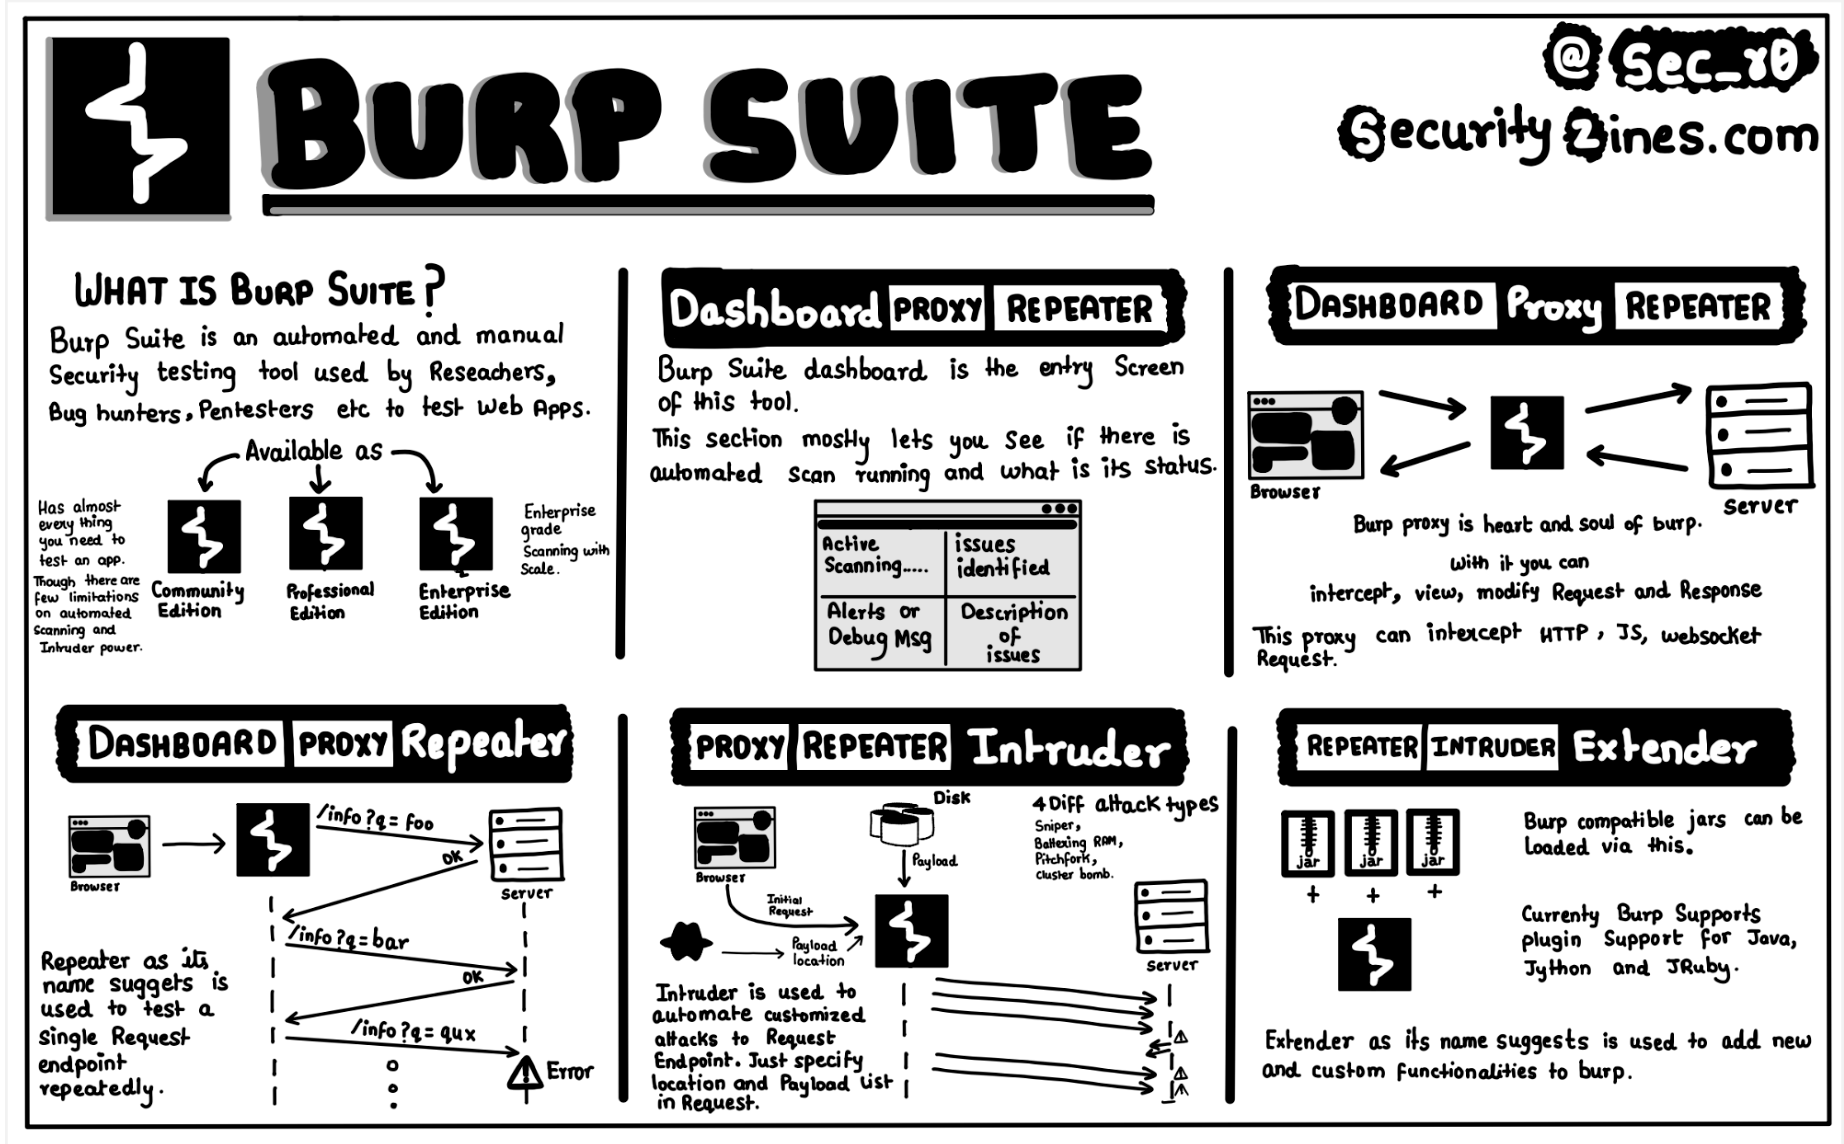 Burp suite pro hacks: XSS cheatsheet 